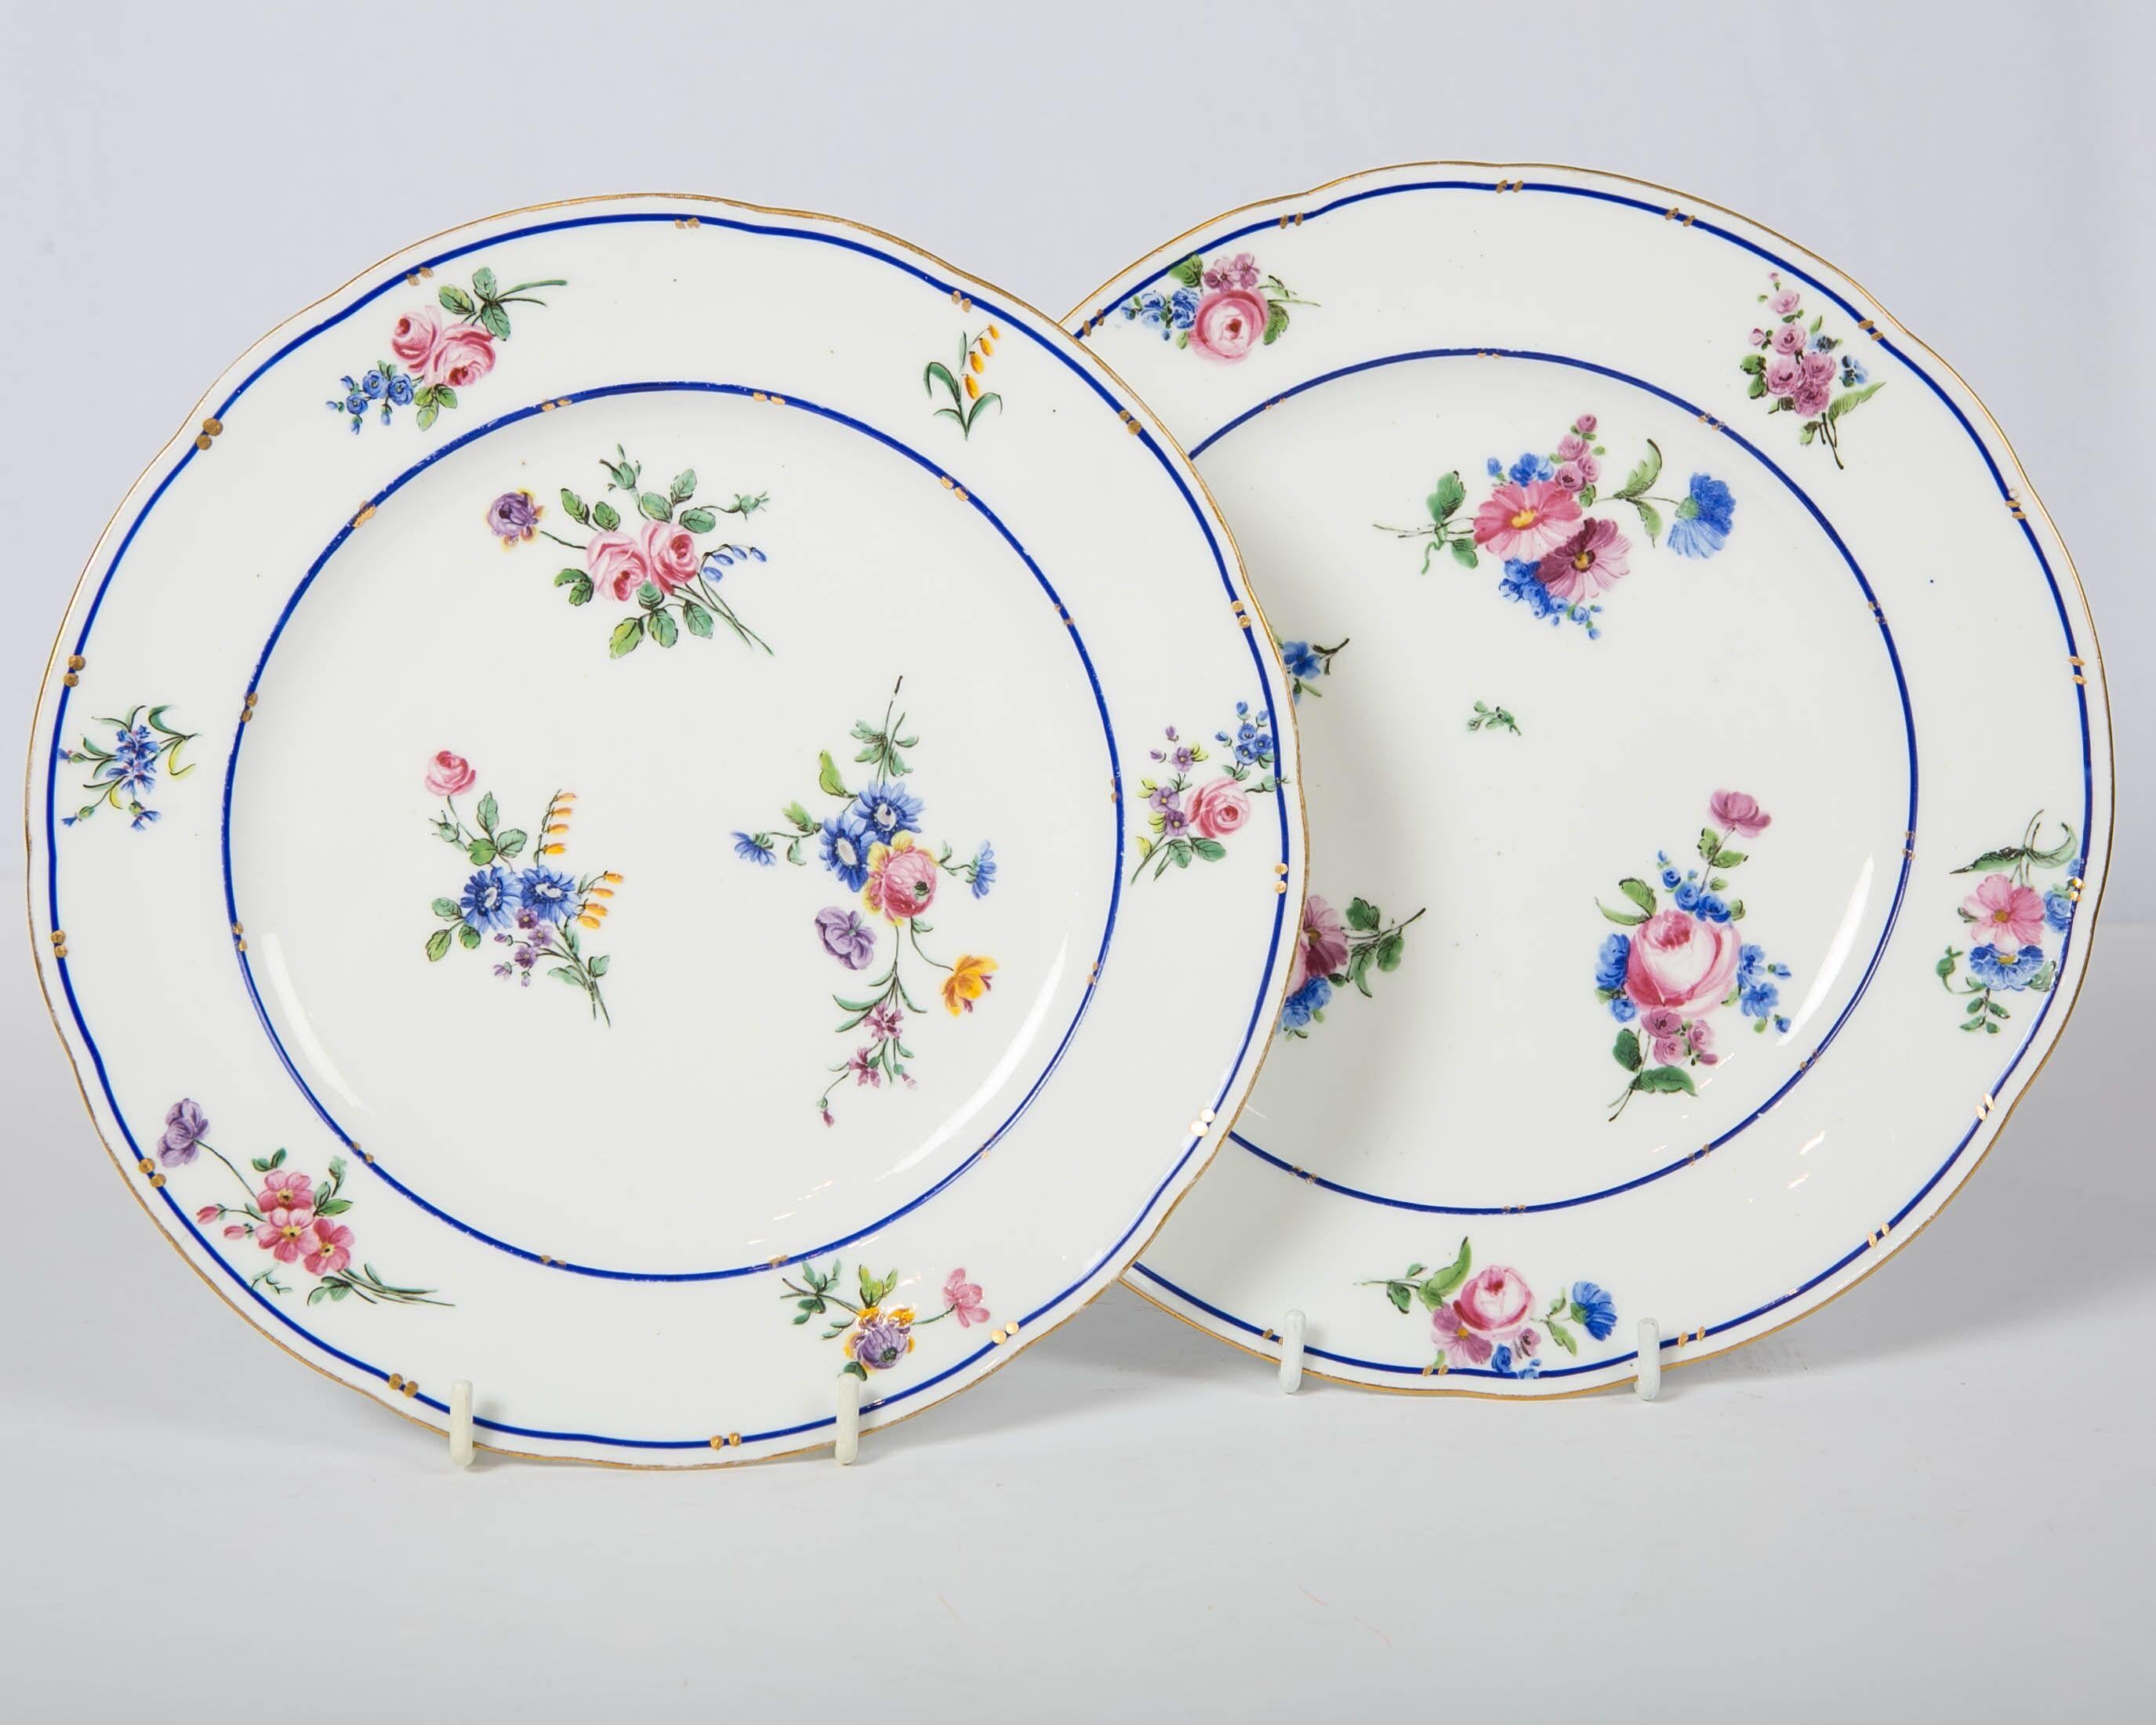 Ein Paar Porzellanschalen aus Sèvres aus dem 18. Jahrhundert, hergestellt um 1785. Sie sind mit exquisiten Blumensträußen in zartem Rosa, Blau, Lila und Gelb bemalt. Der Rand und die Kante sind mit einer feinen emaillierten blauen Linie und einer